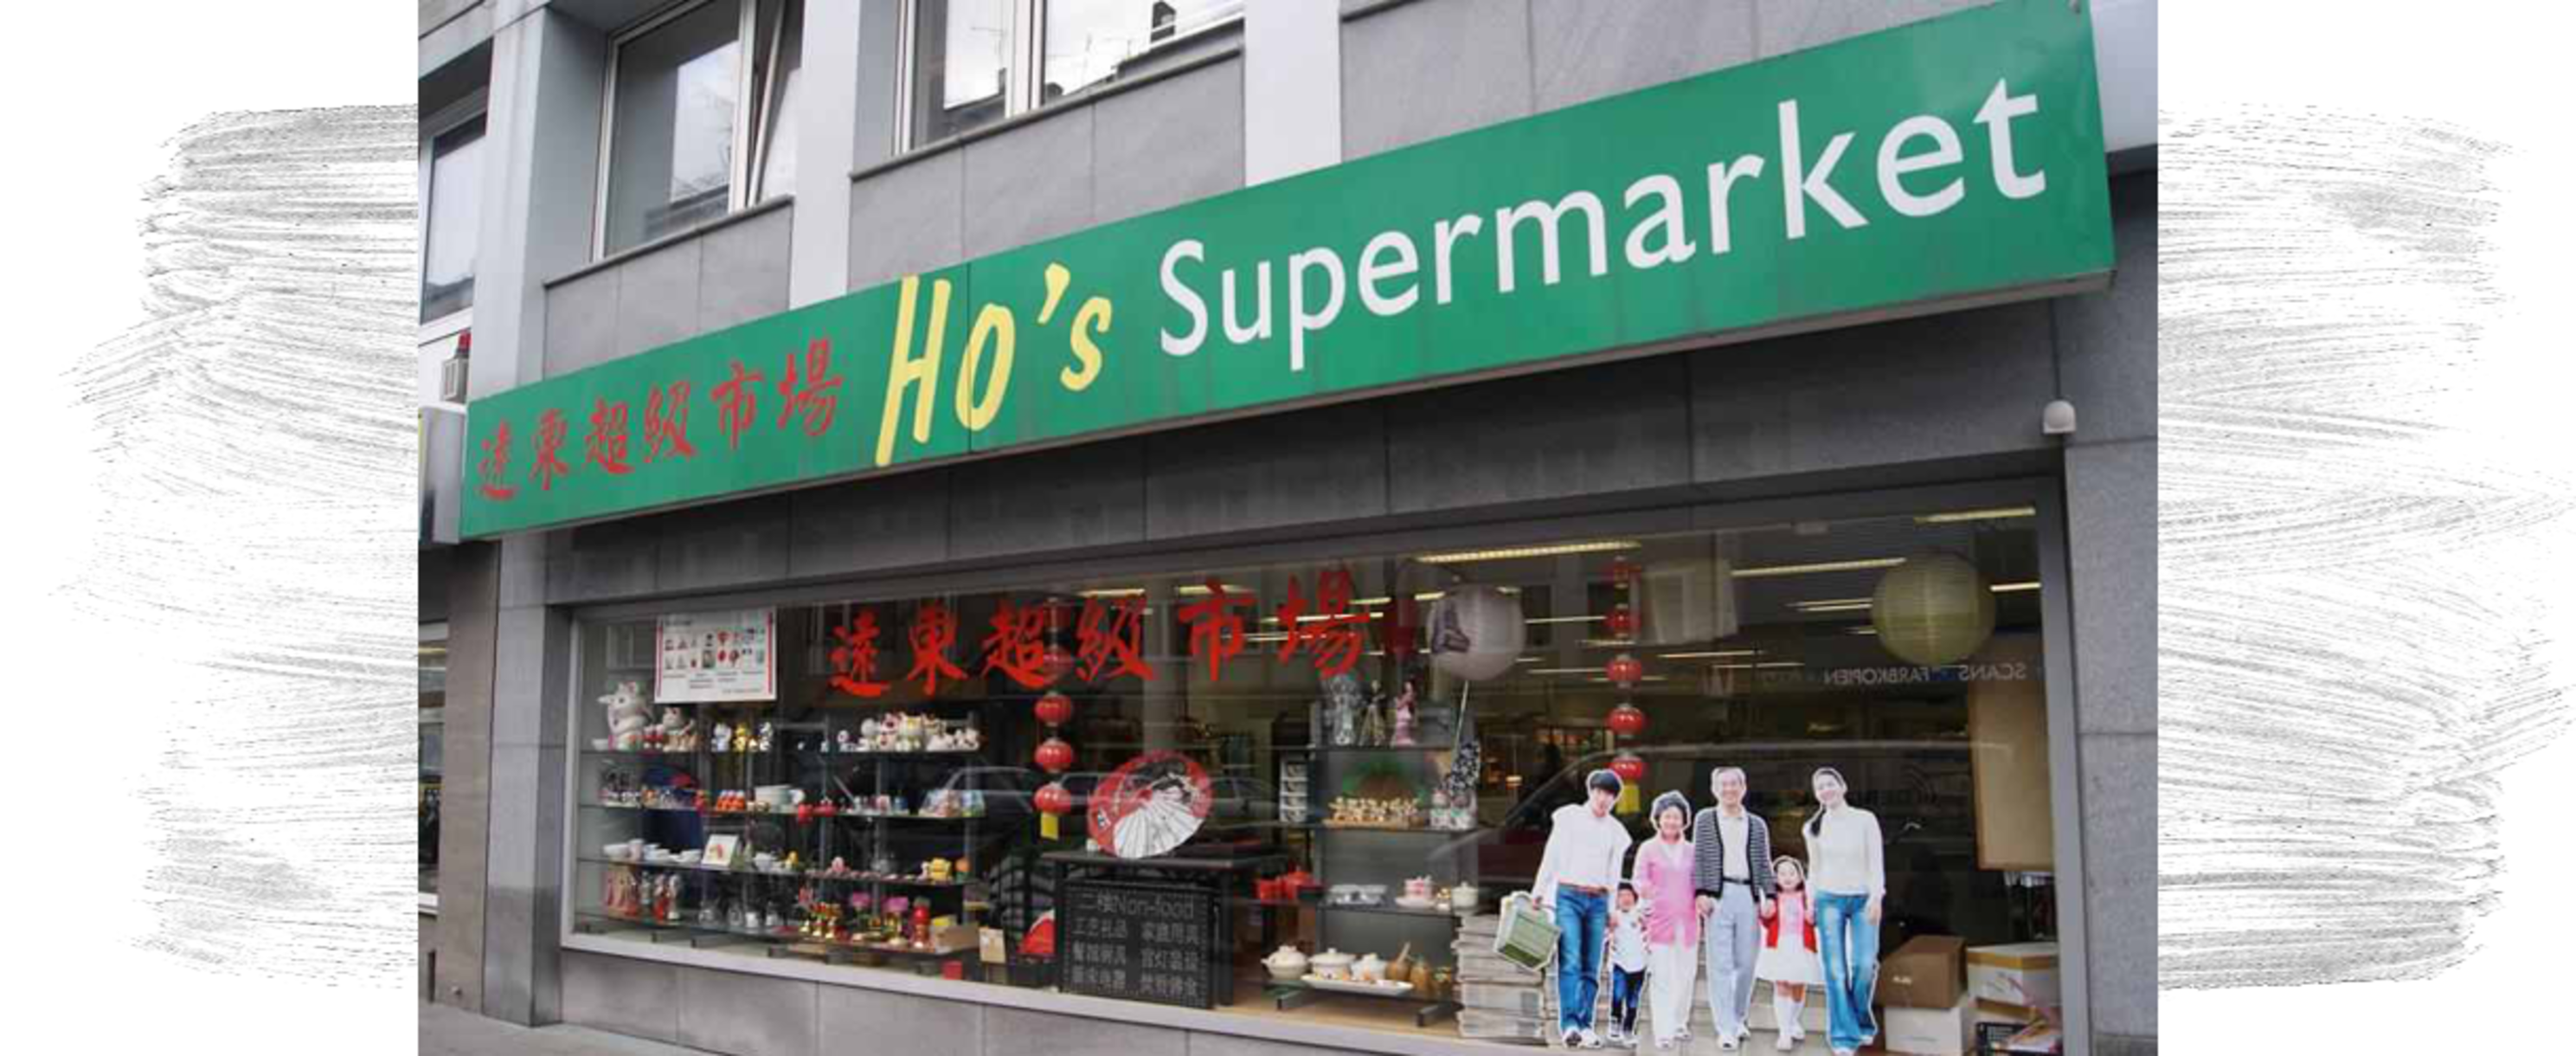 Bild vom Shoplogo Ho's Supermarkt